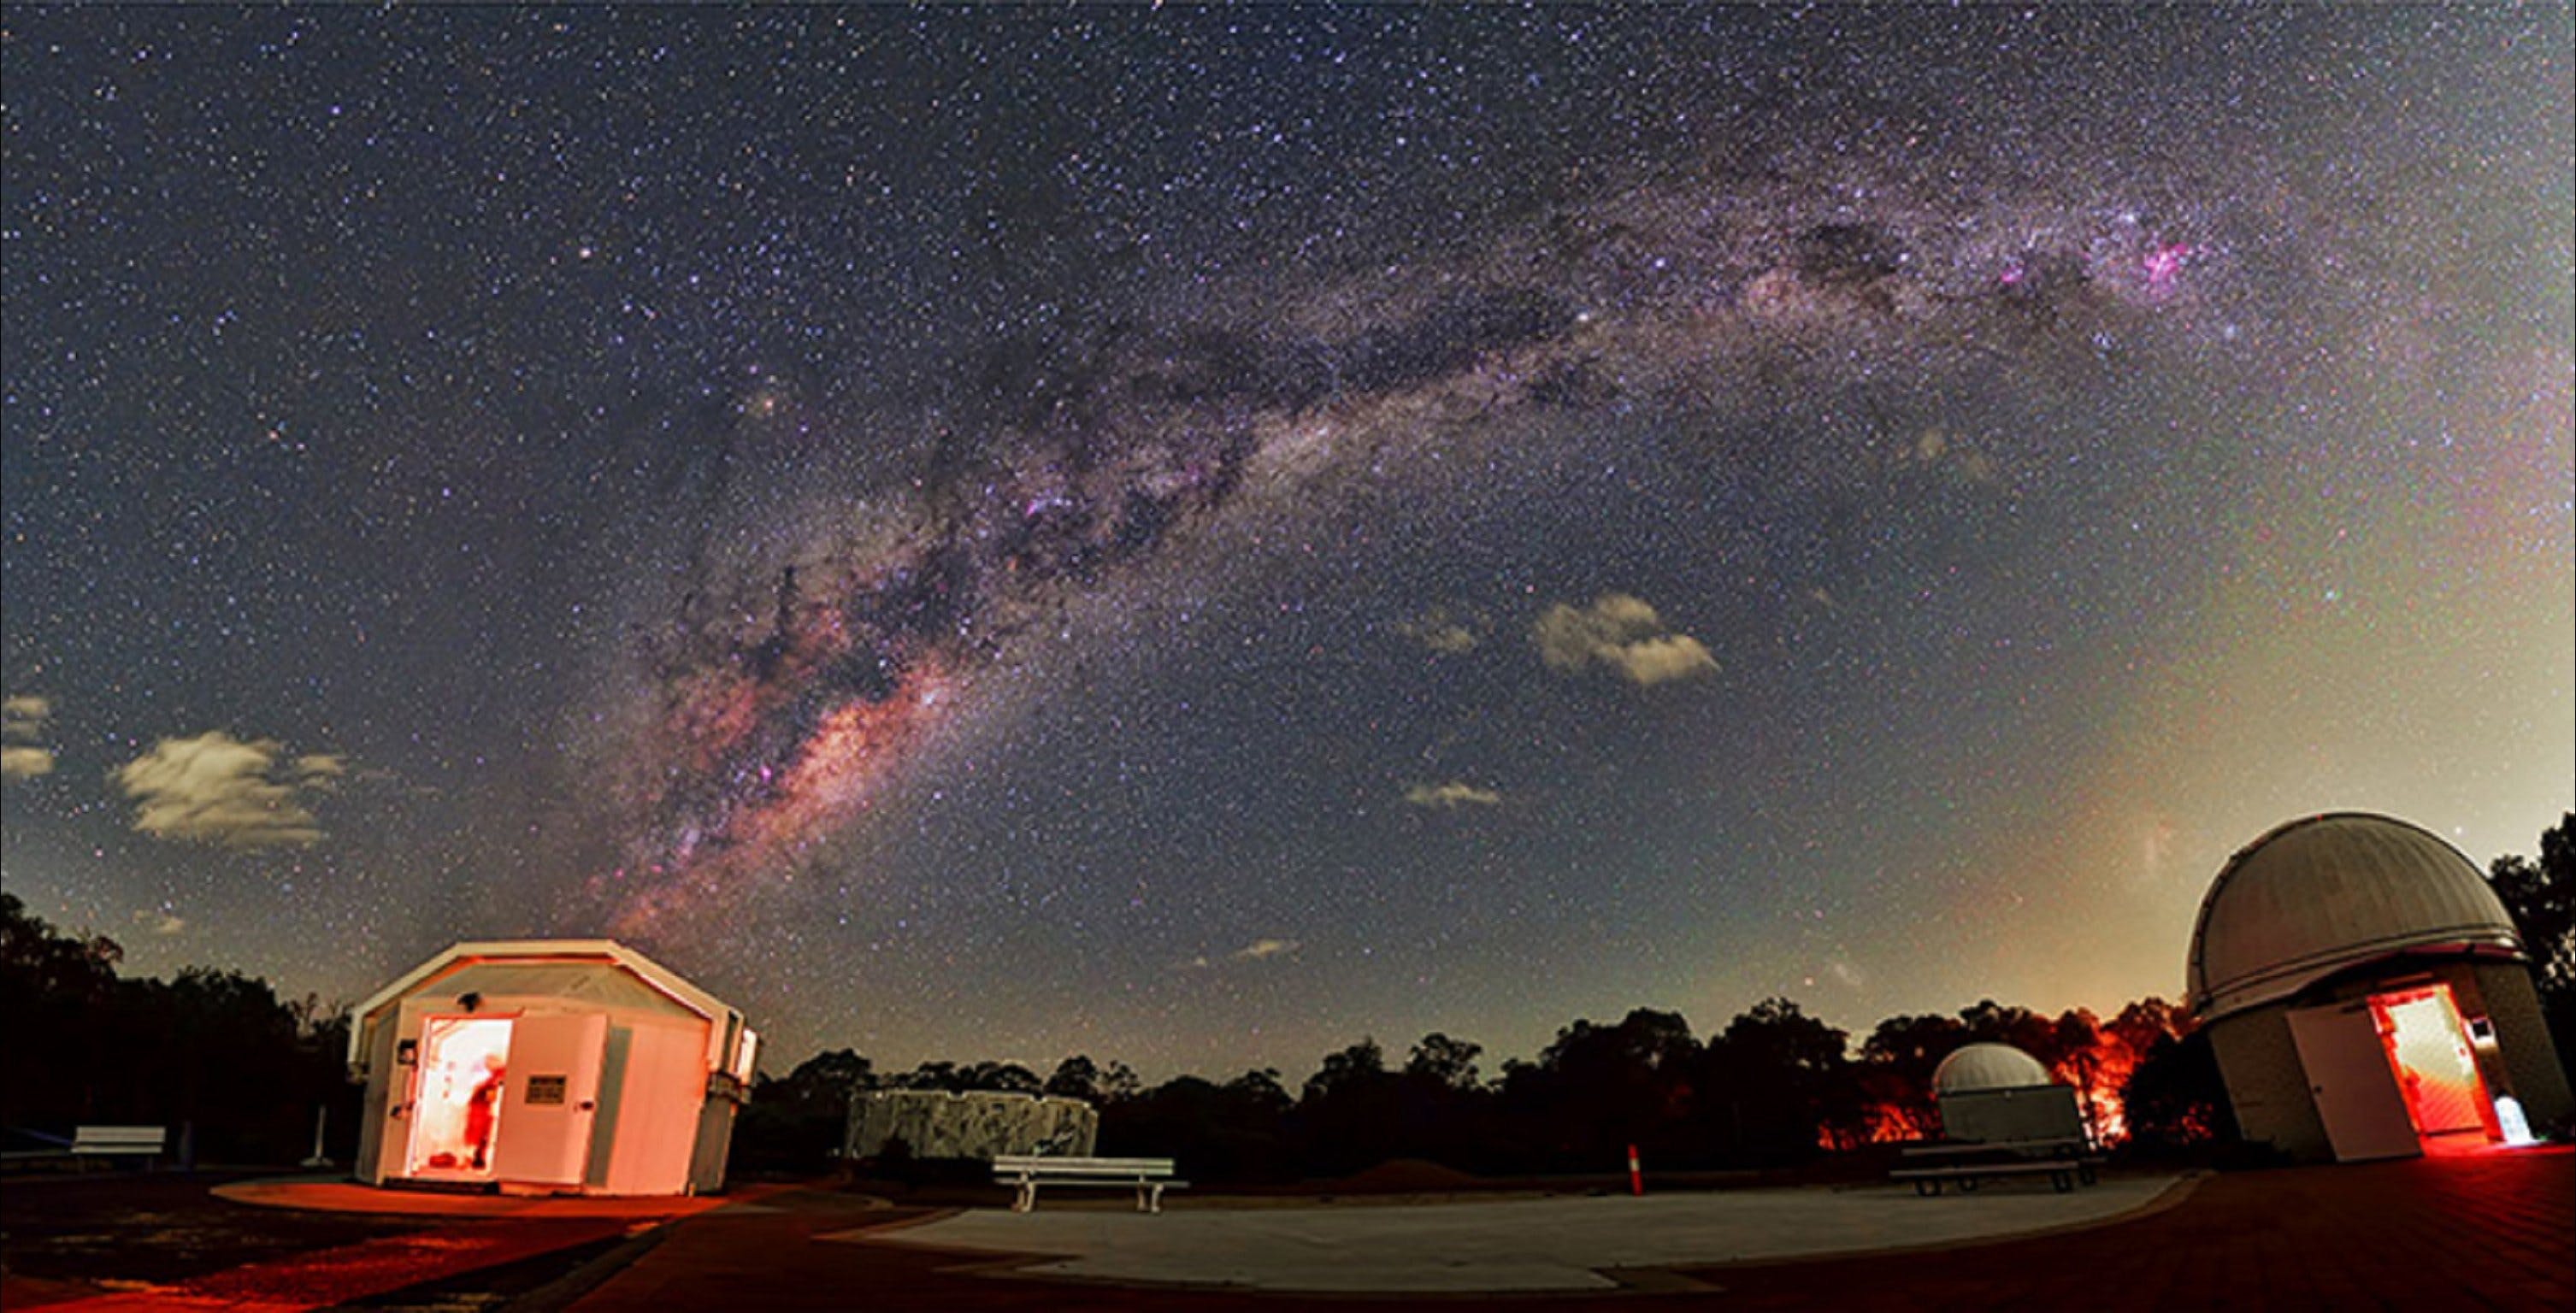 Perth Observatory - WA Accommodation